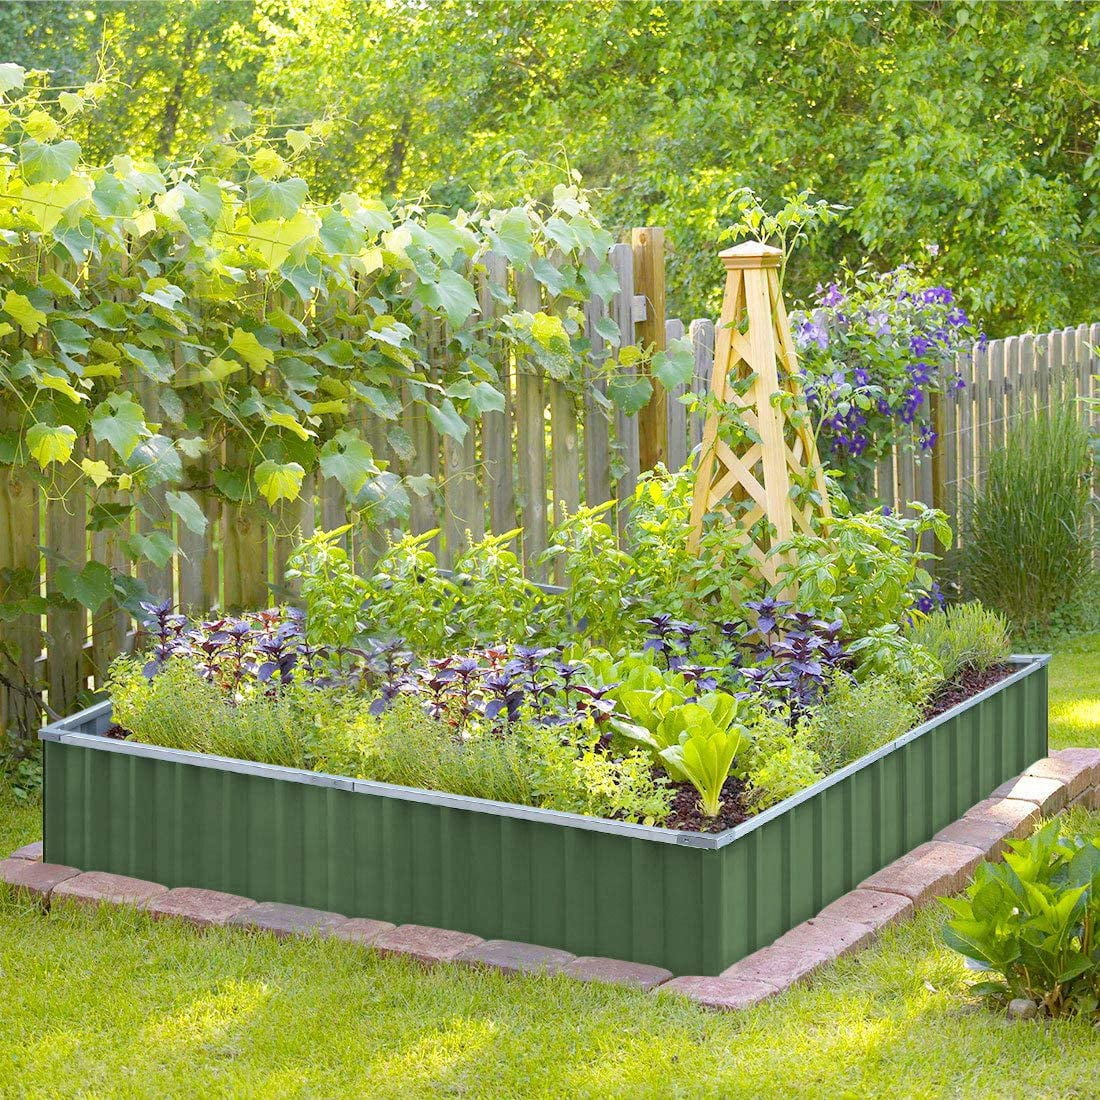 Garden Tools, Planters, Raised Garden Beds +More